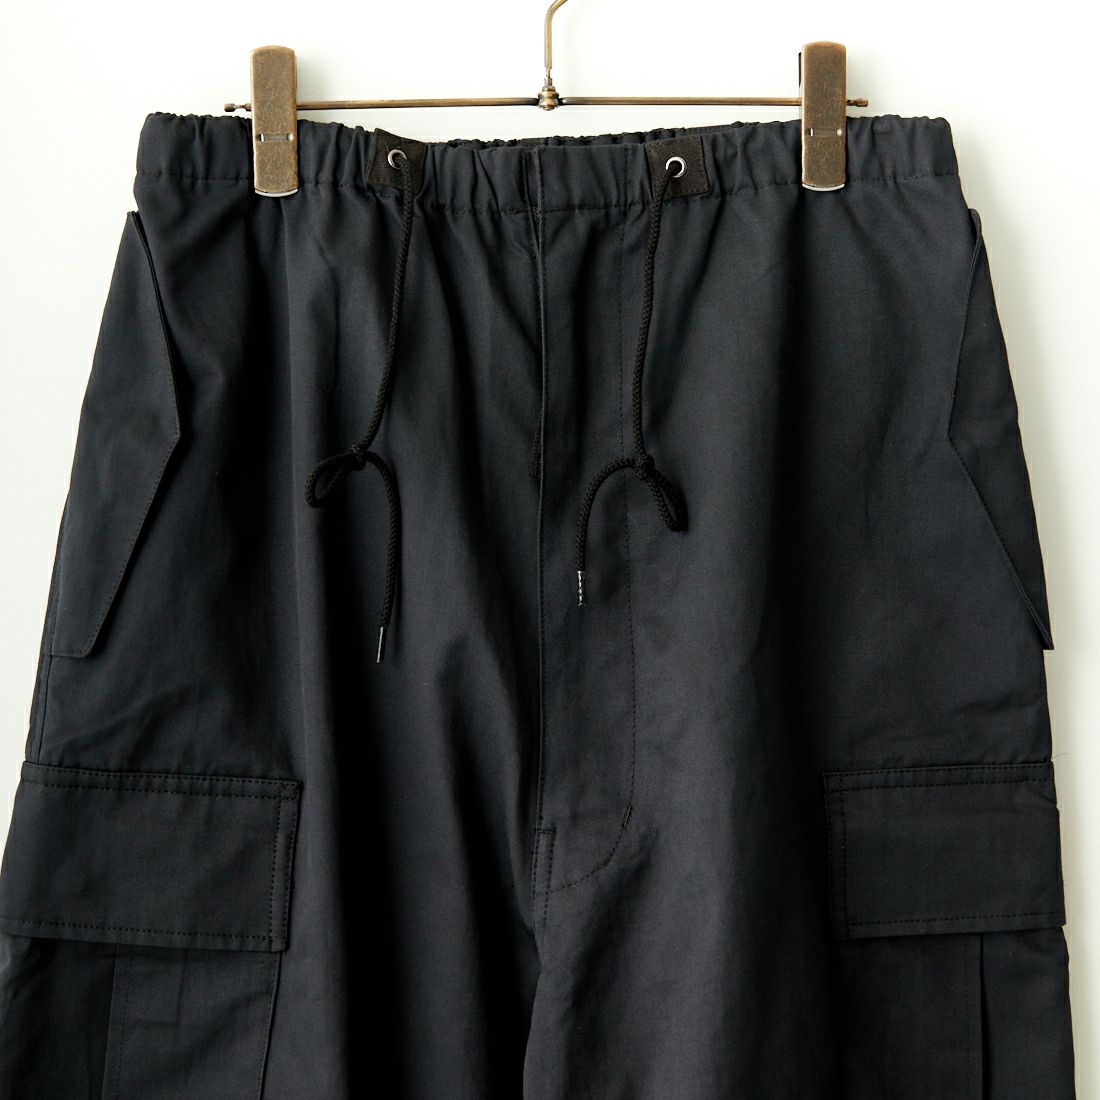 Jeans Factory Clothes [ジーンズファクトリークローズ] ワイドカーゴパンツ [JFC-234-095] BLACK